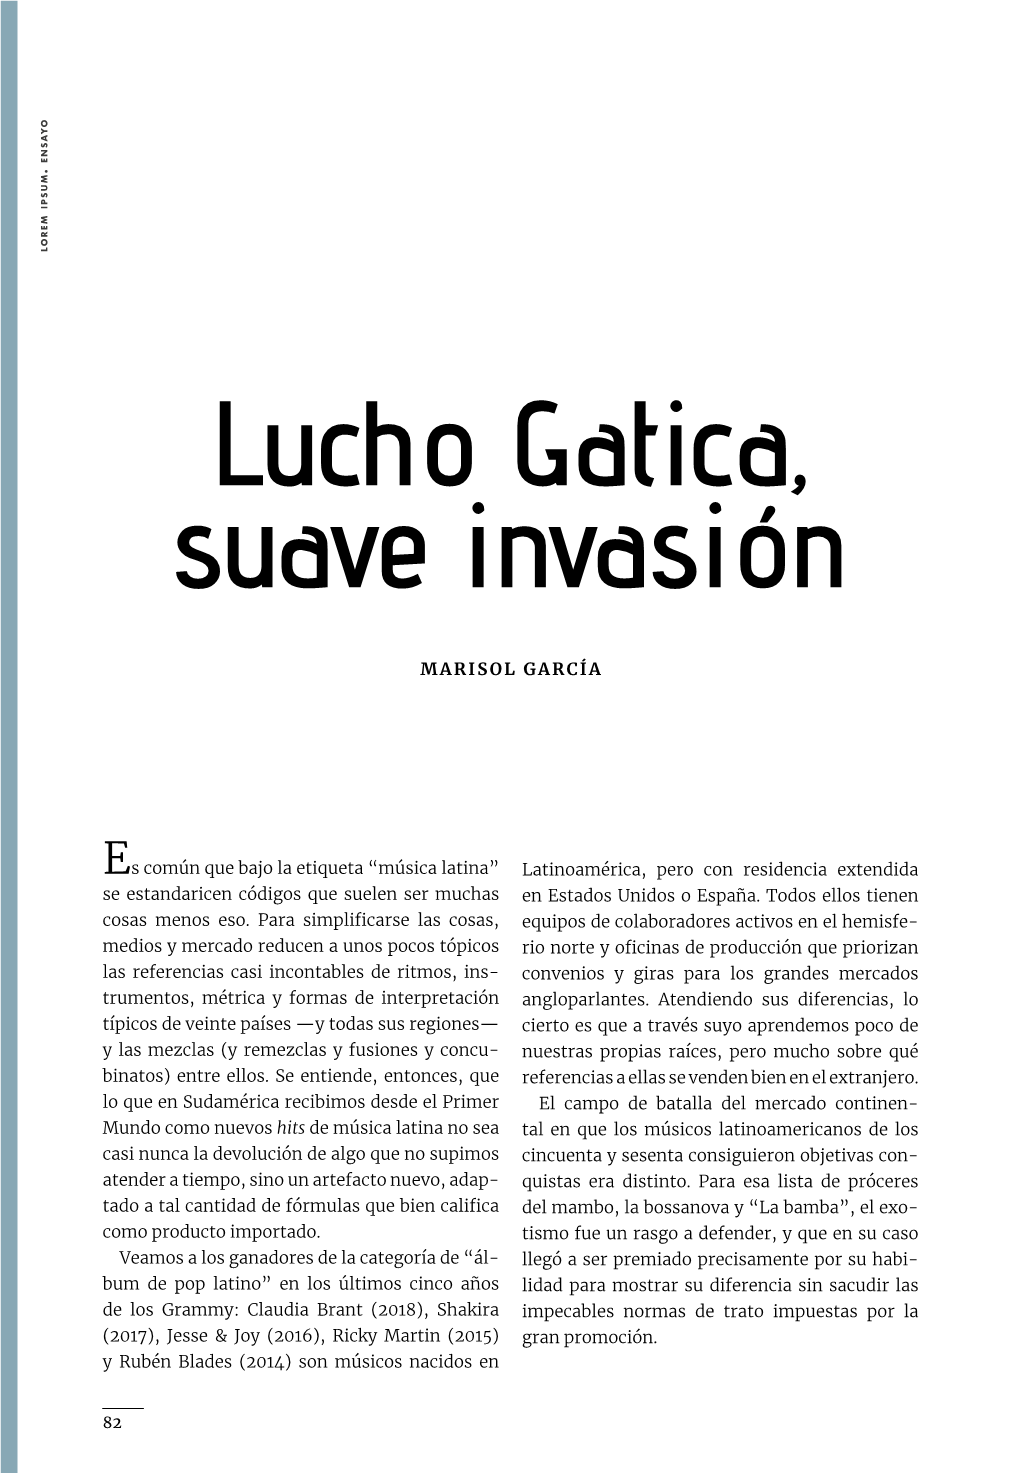 Lucho Gatica, Suave Invasión